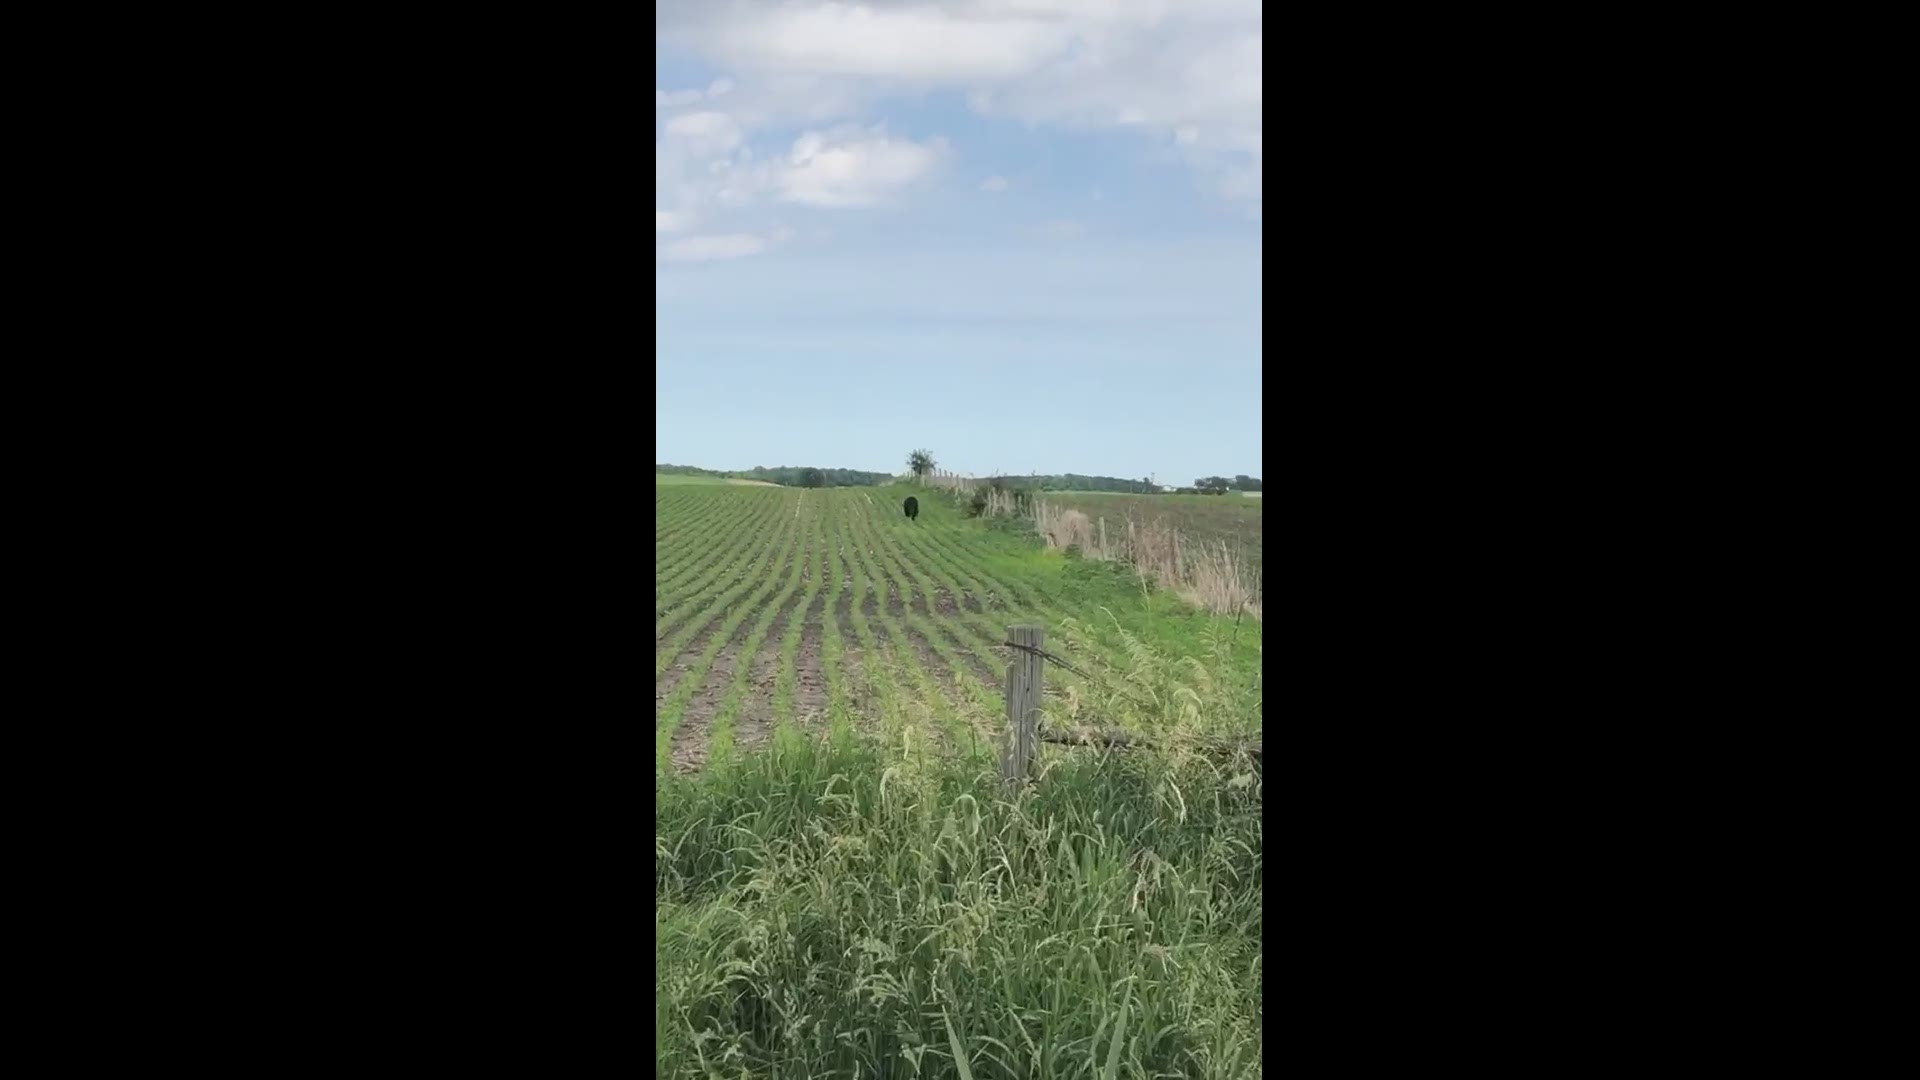 Black bear spotted in Iowa field